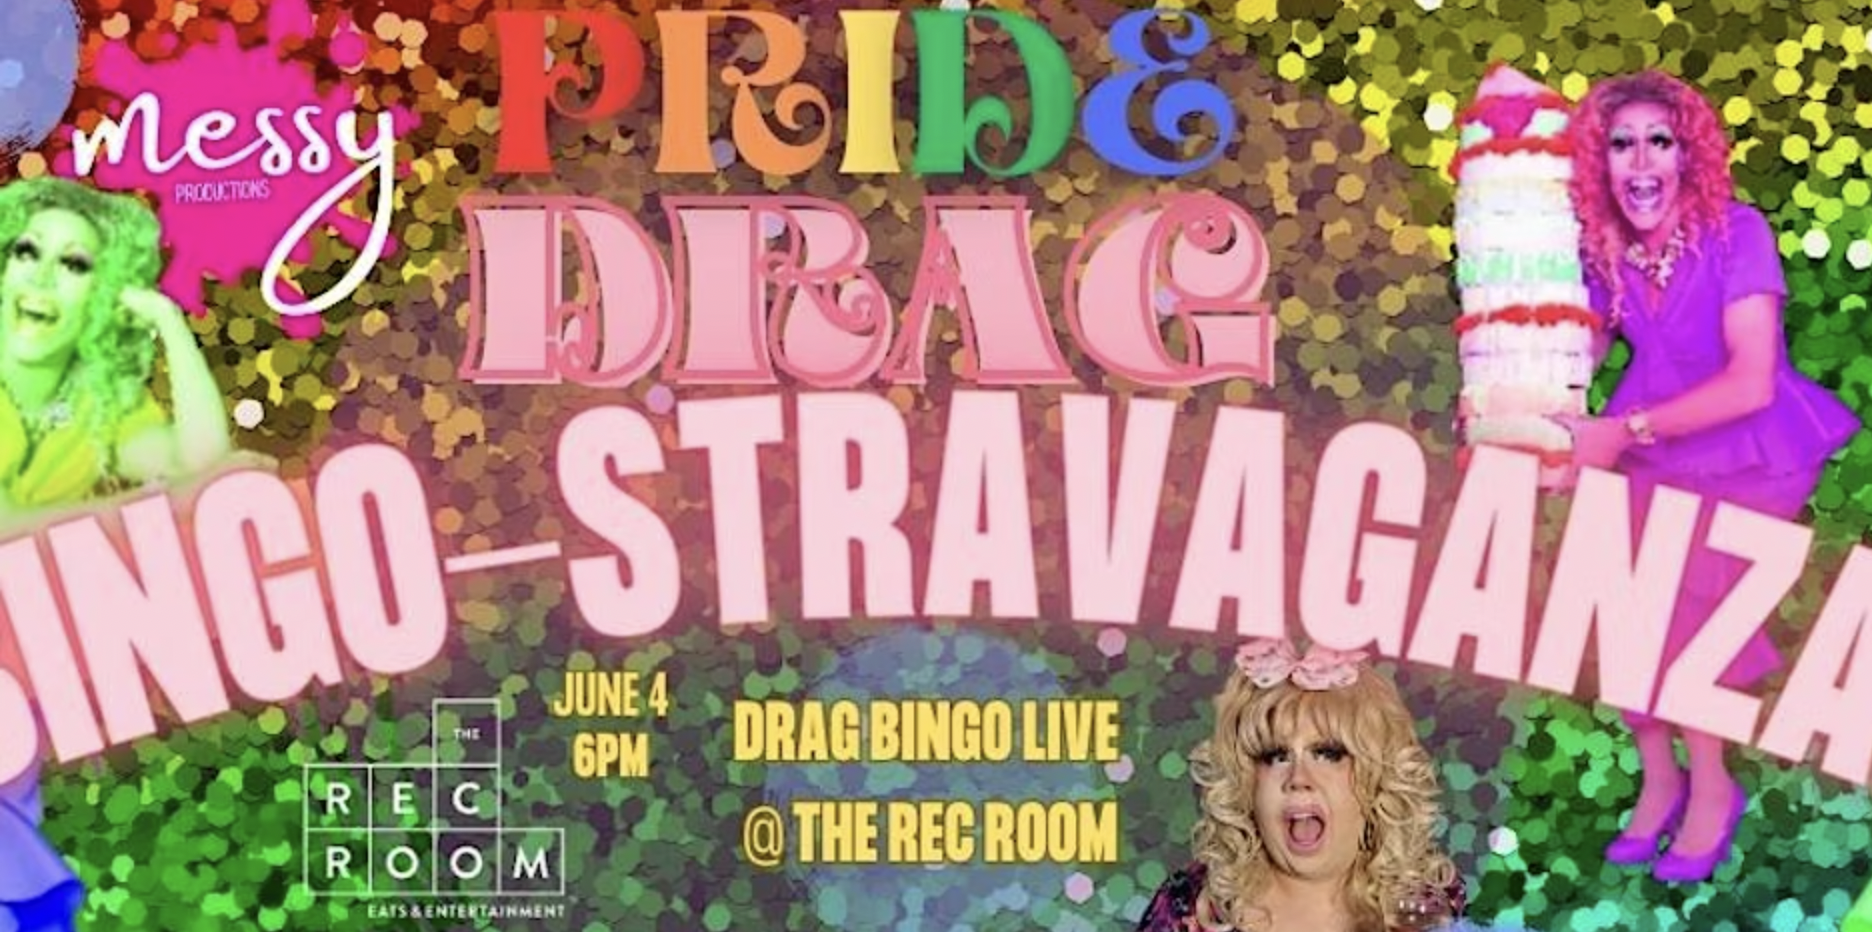 The Rec Room for Drag Bingo-Stravaganza